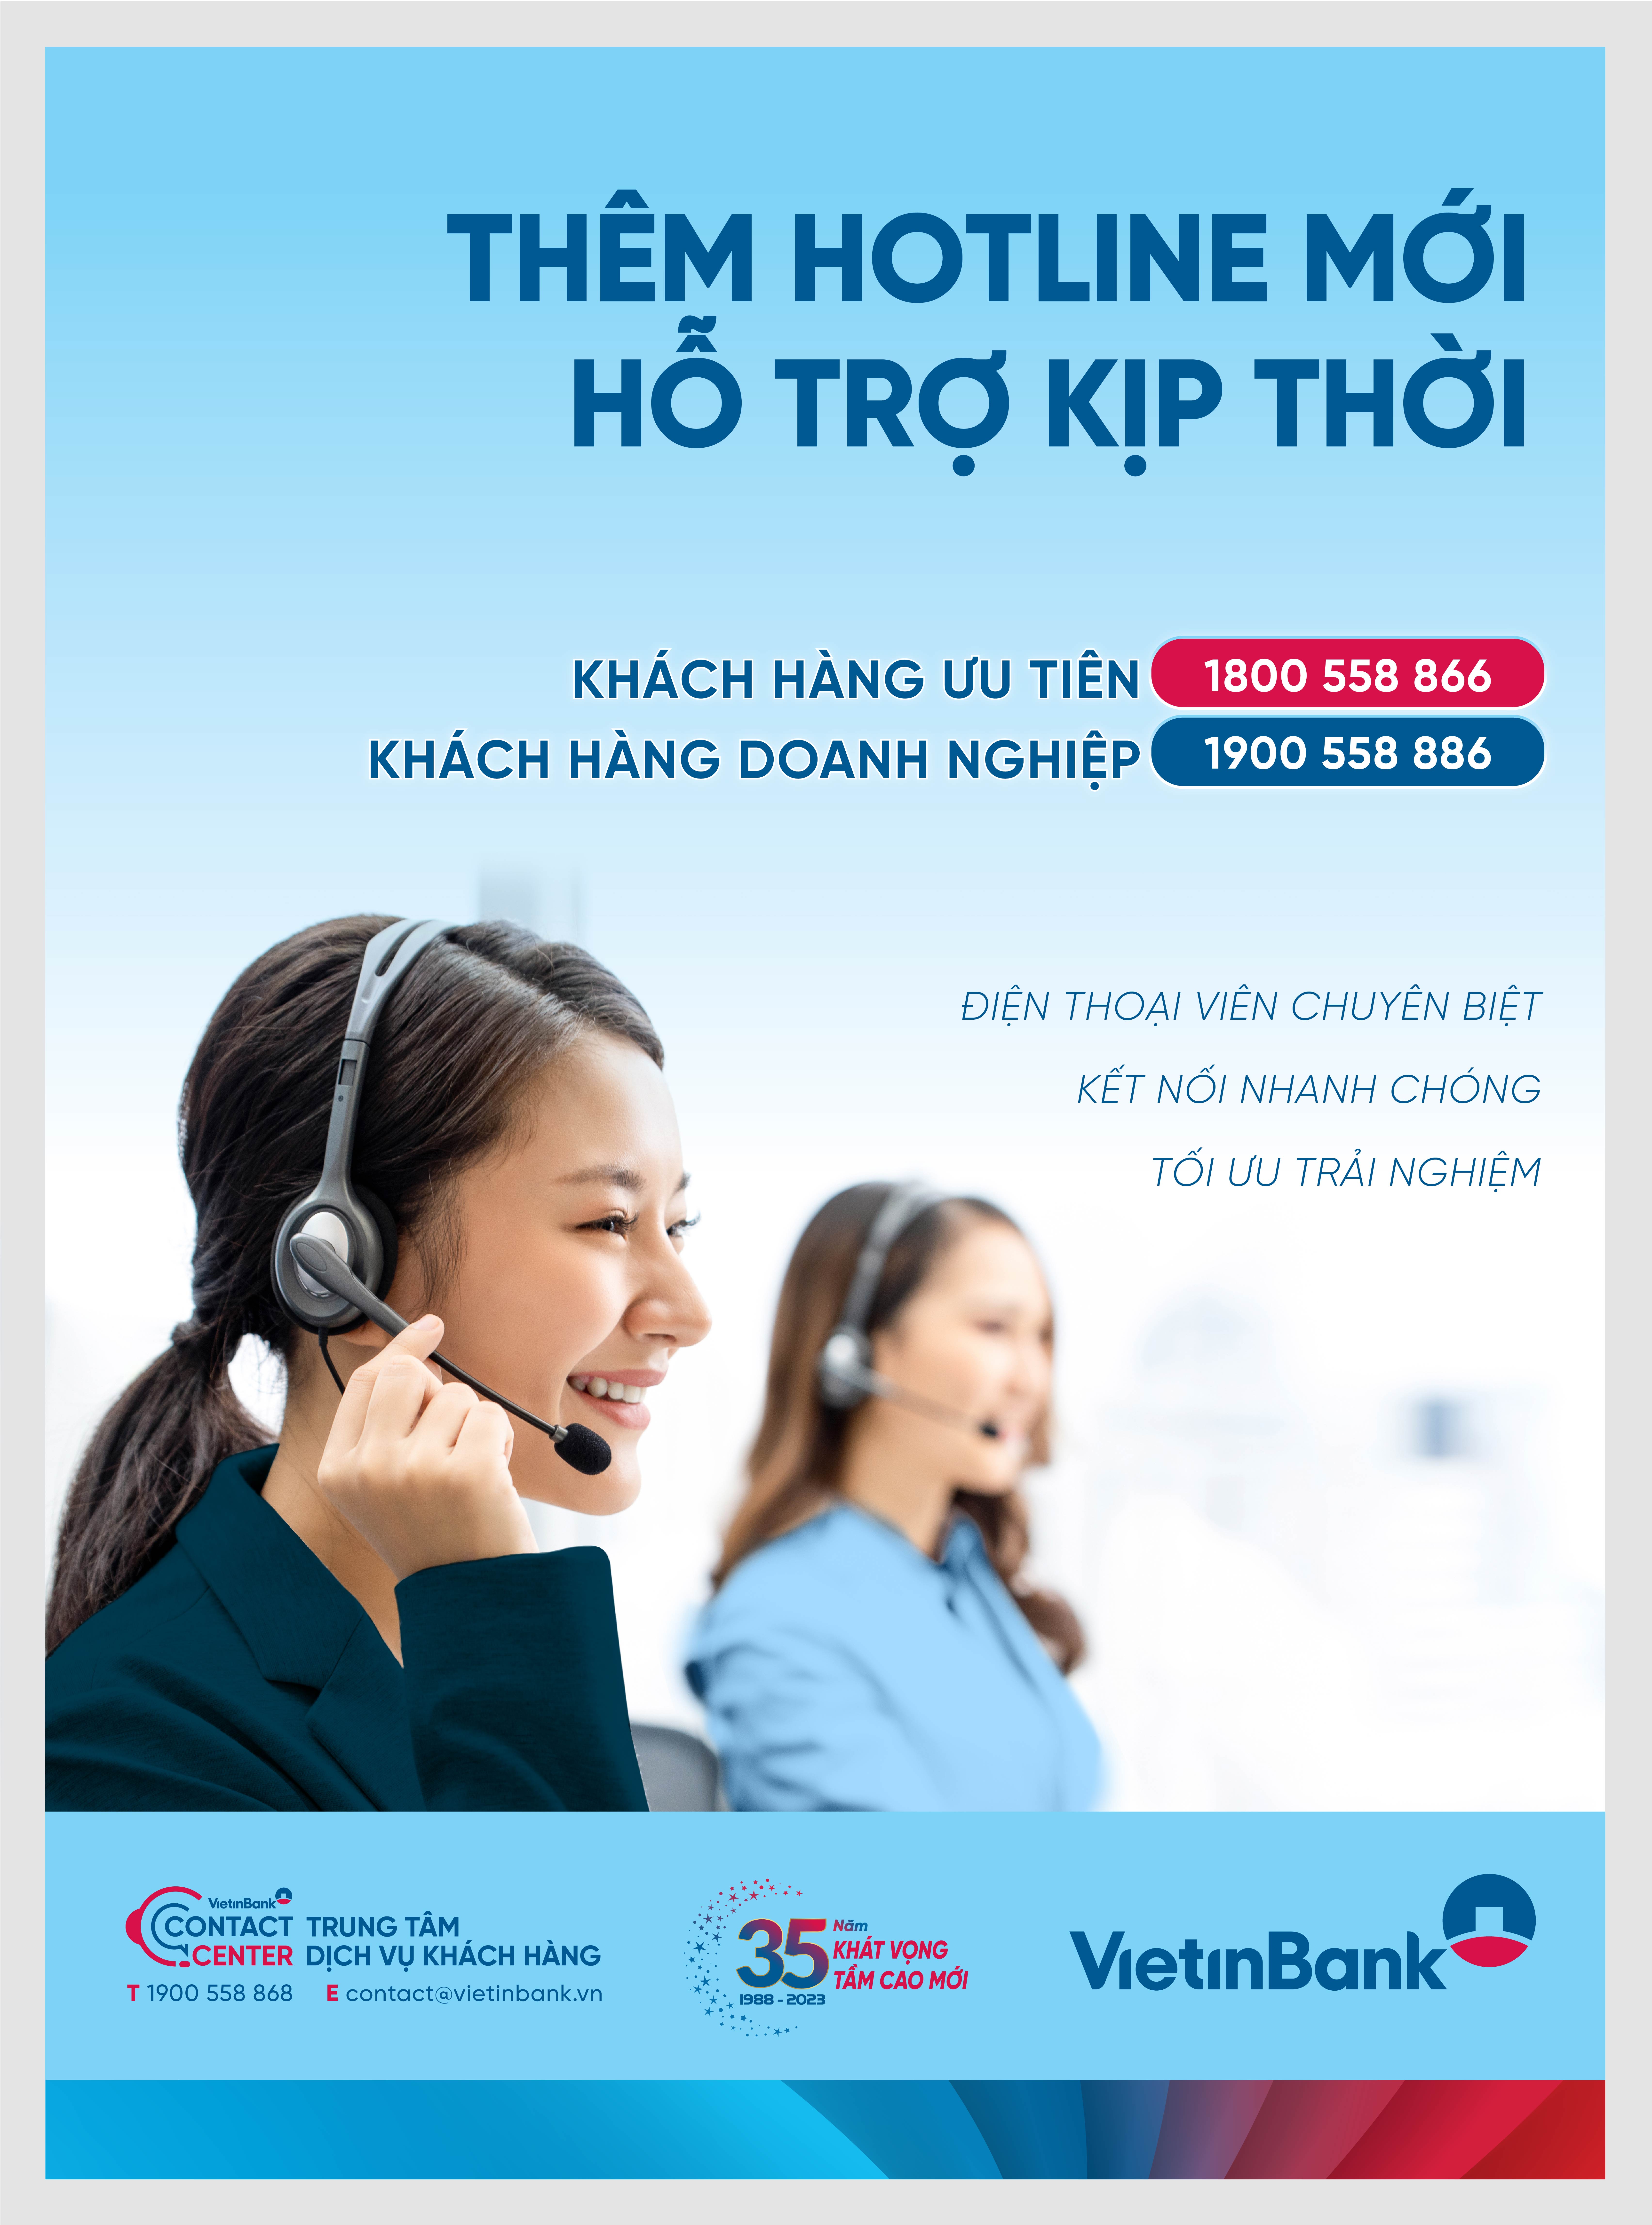 VietinBank ra mắt Hotline mới phục vụ kh&#225;ch h&#224;ng ưu ti&#234;n v&#224; kh&#225;ch h&#224;ng doanh nghiệp - Ảnh 1